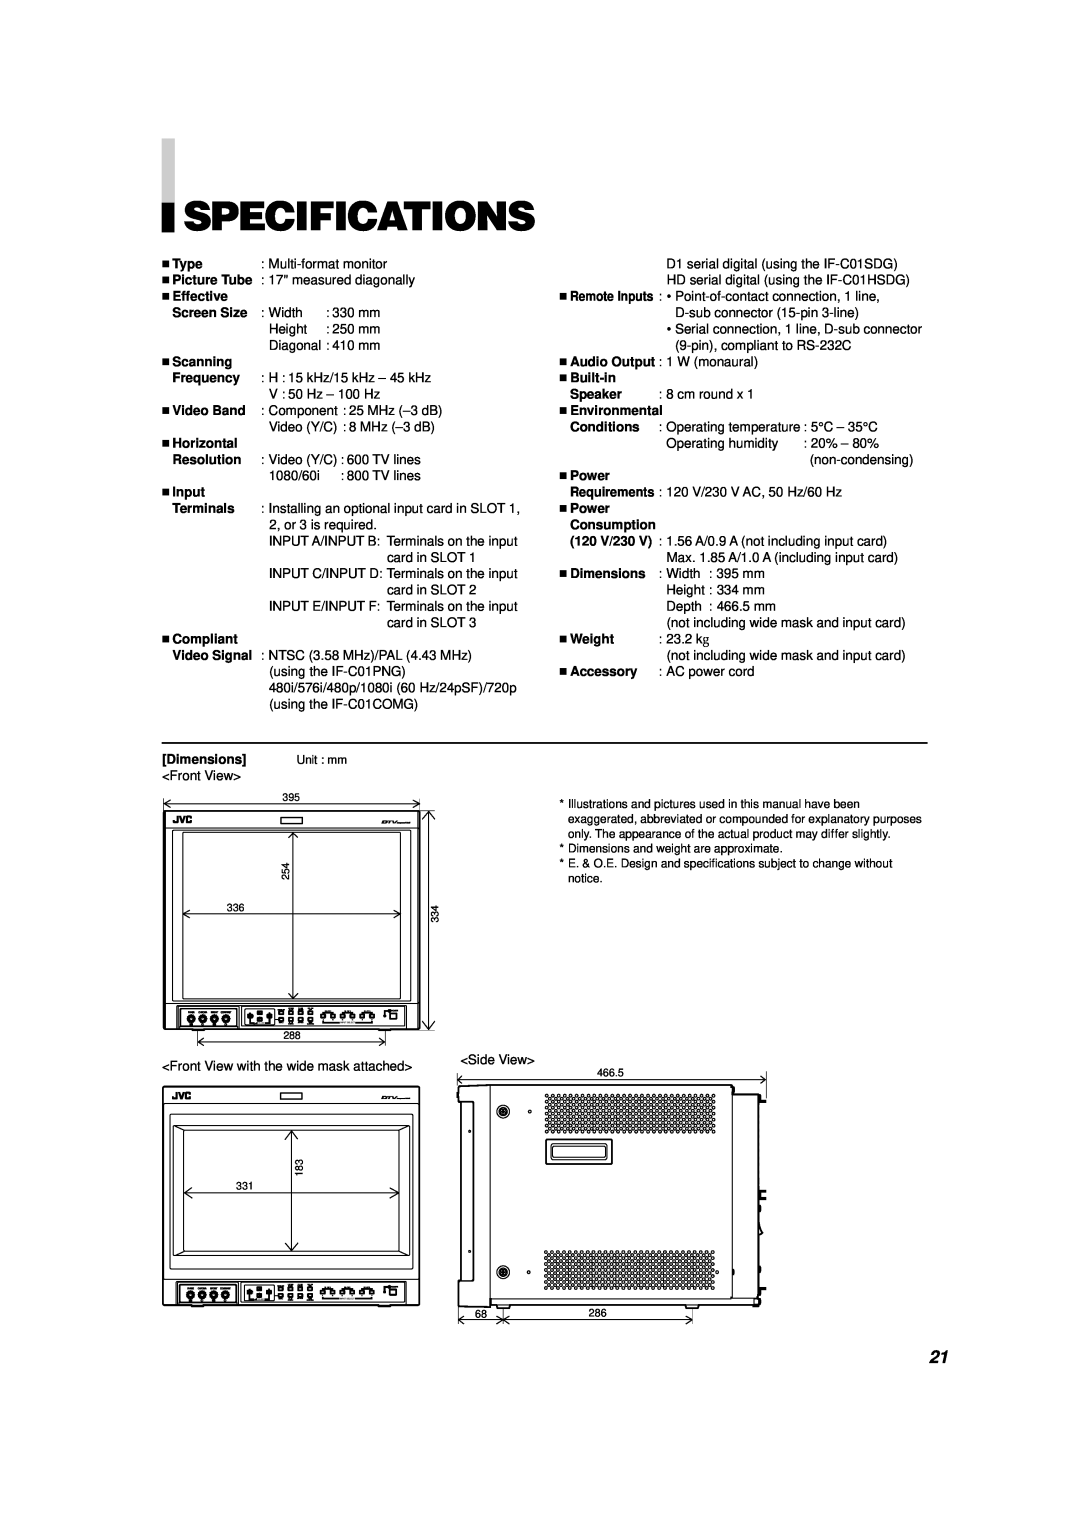 JVC V1700CG manual Specifications 